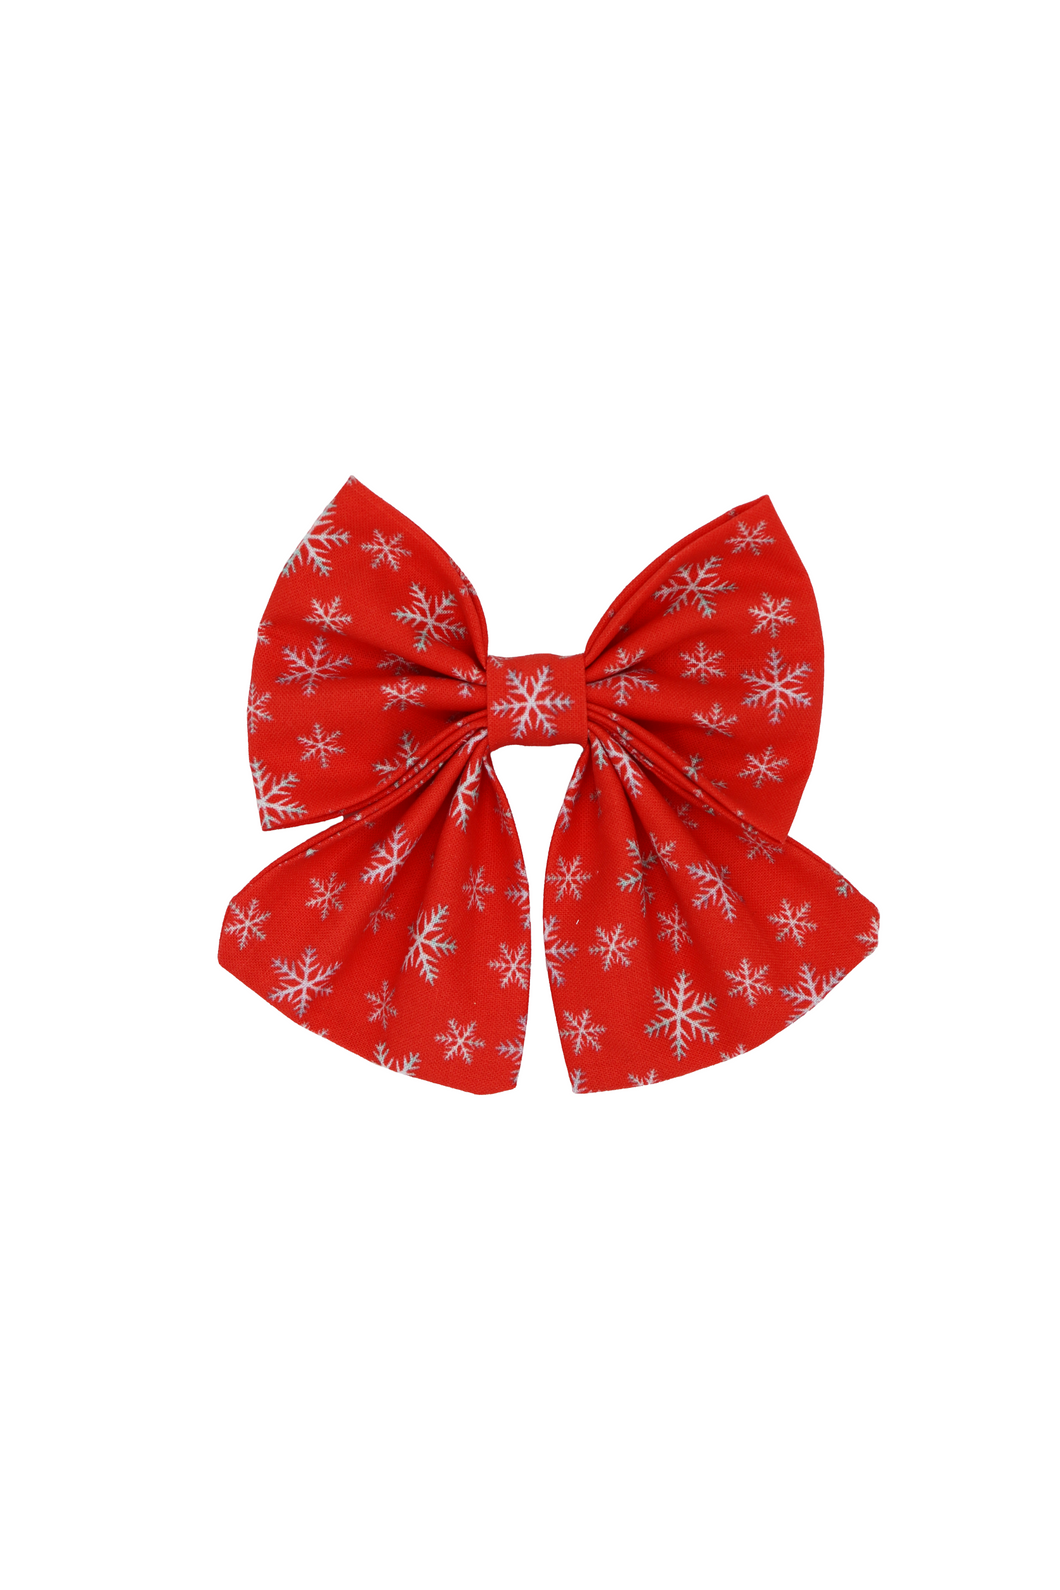 Sailor Bow Tie - Snowflakes